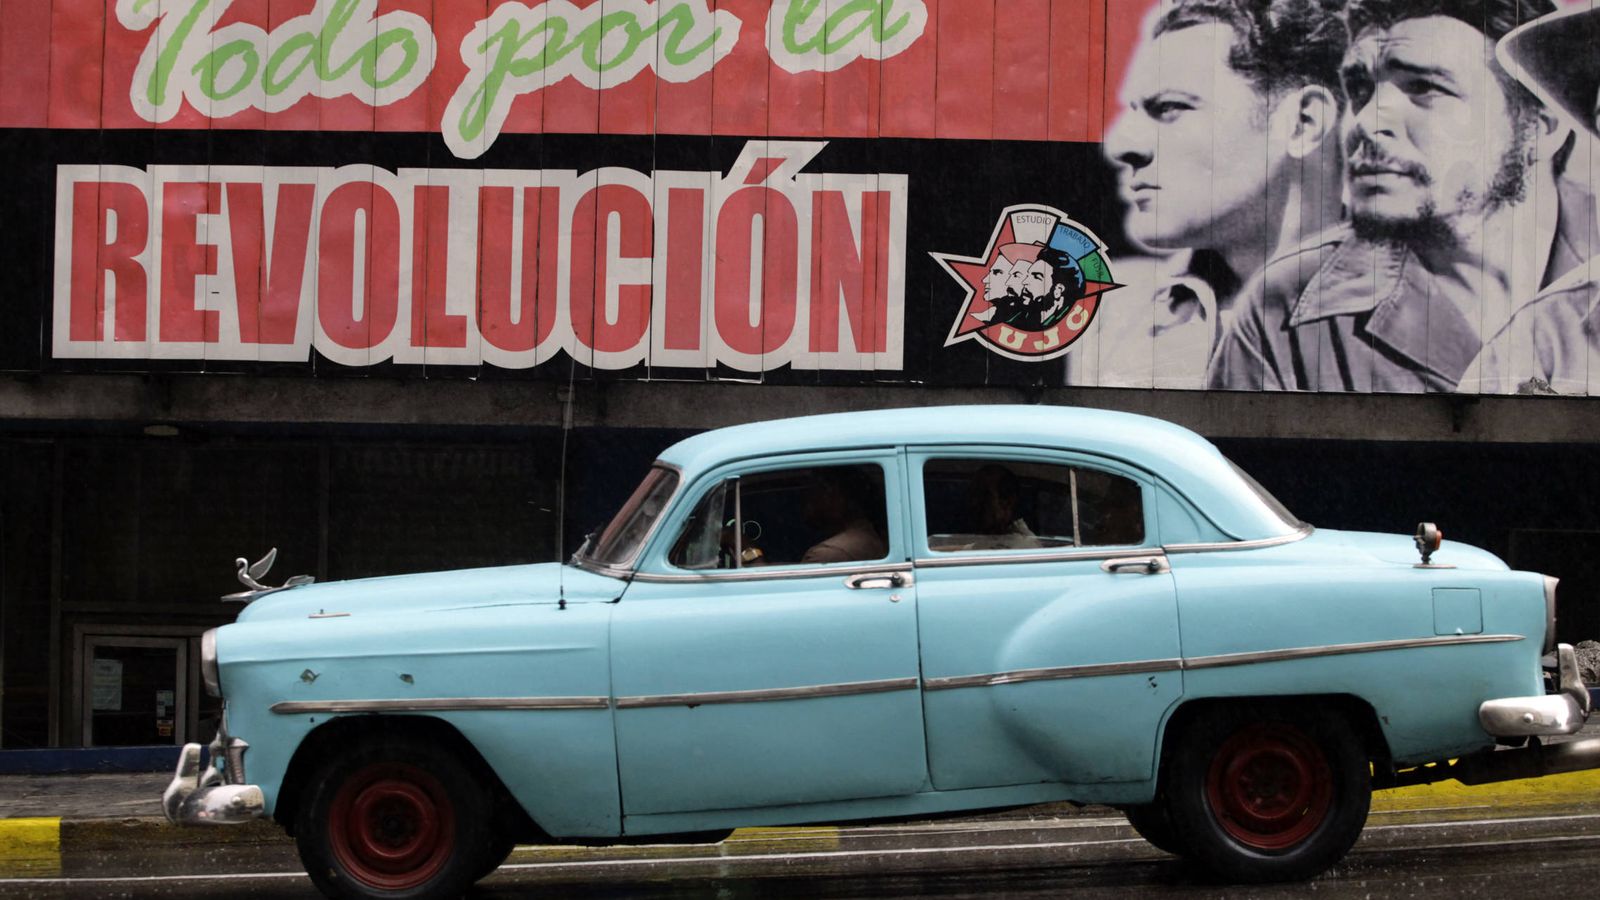 Foto: Un "almendrón", uno de los coches fabricados antes de la Revolución, pasa por delante de un cartel revolucionario en La Habana. (Reuters)